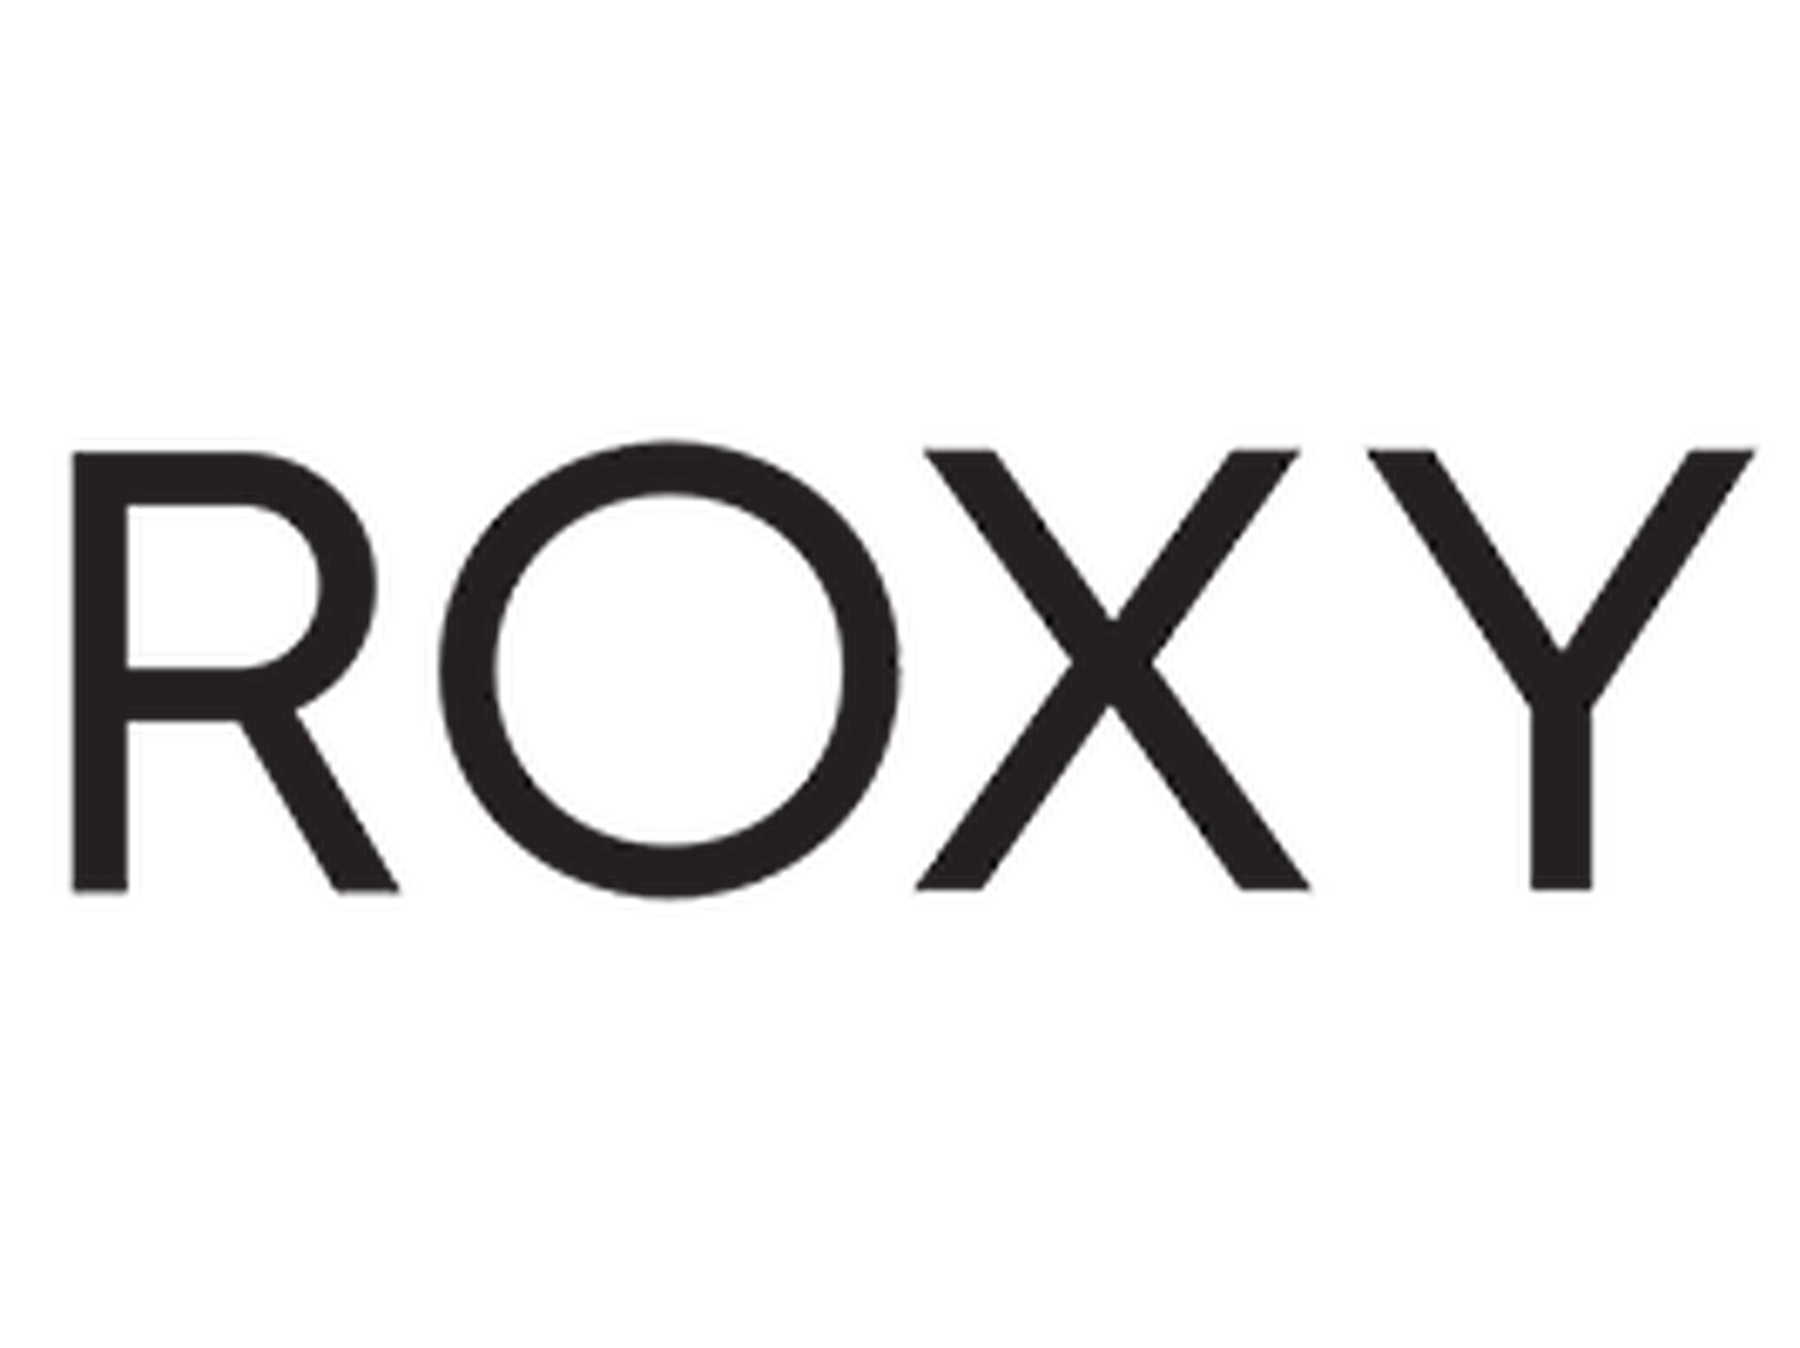 Roxy kortingscode